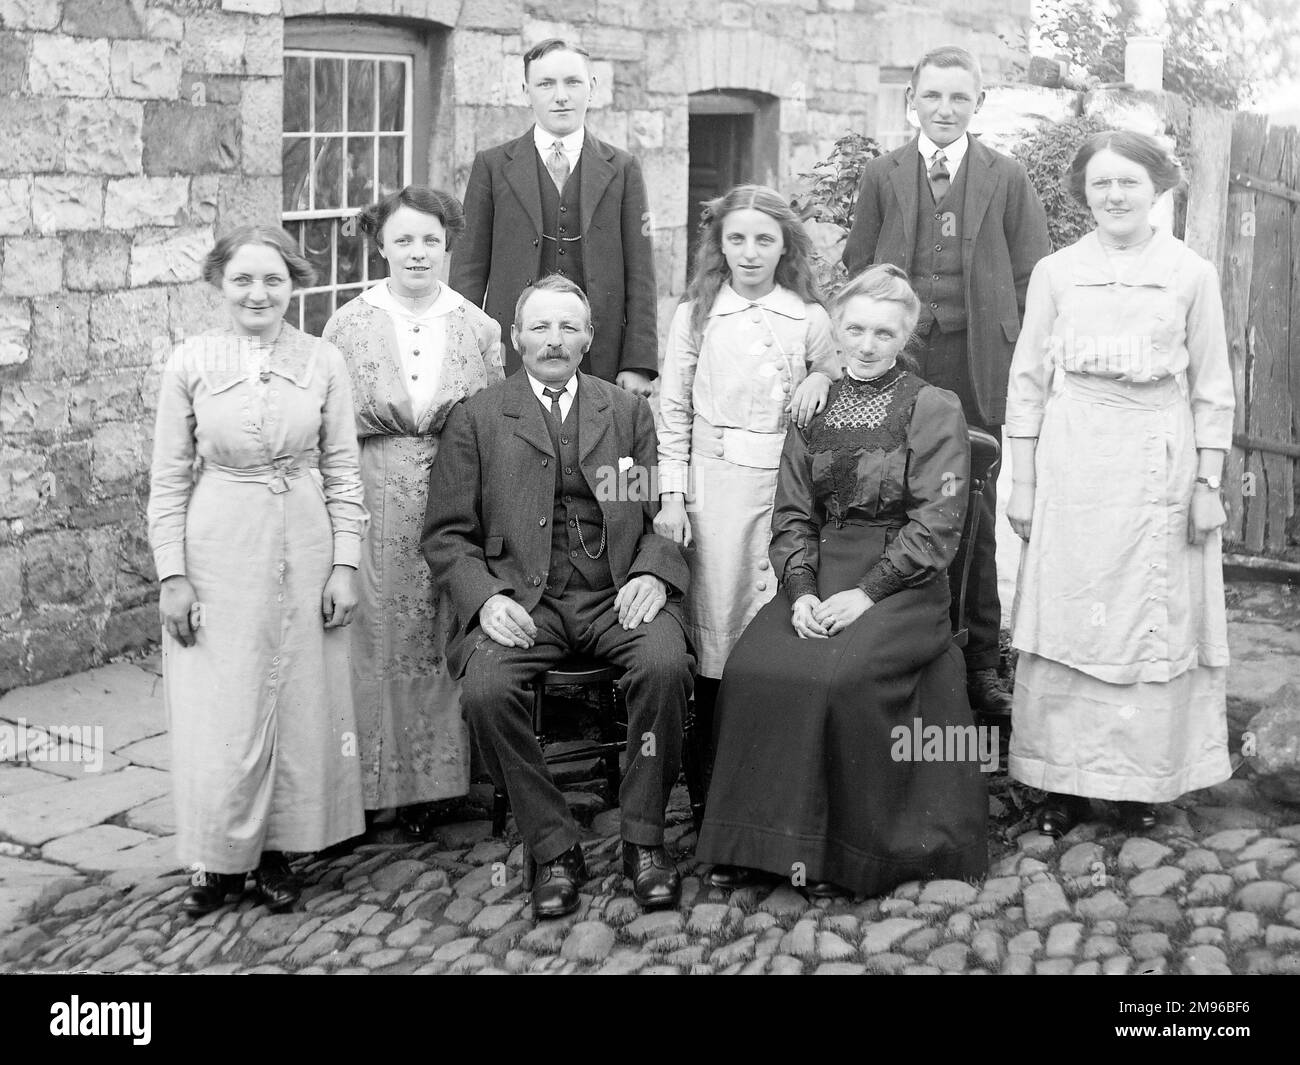 Una famiglia (cinque donne e tre uomini) posa per una fotografia di gruppo in un cortile acciottolato fuori una casa, probabilmente nella zona del Galles centrale. Foto Stock